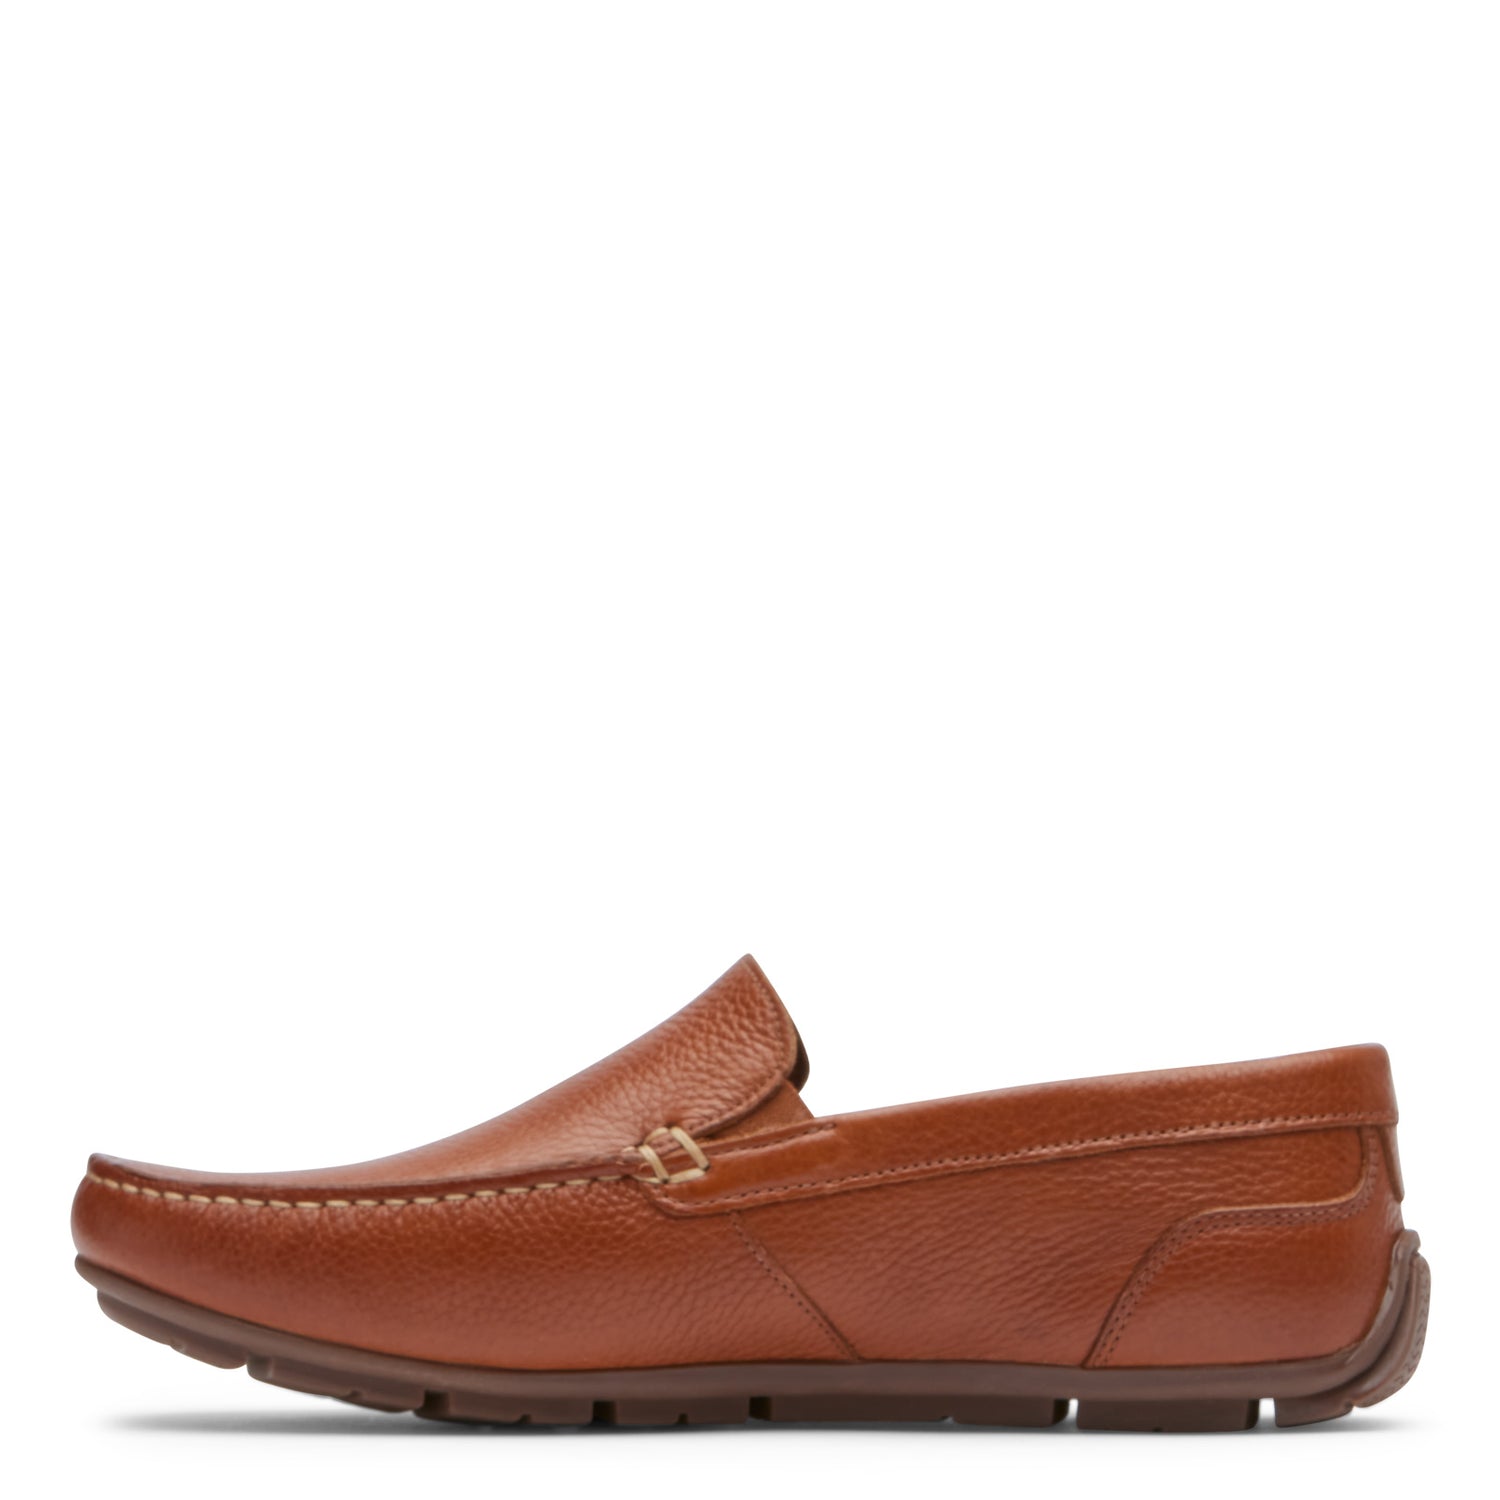 Peltz Shoes  Men's Rockport Warner Venetian Loafer Tan CJ1443